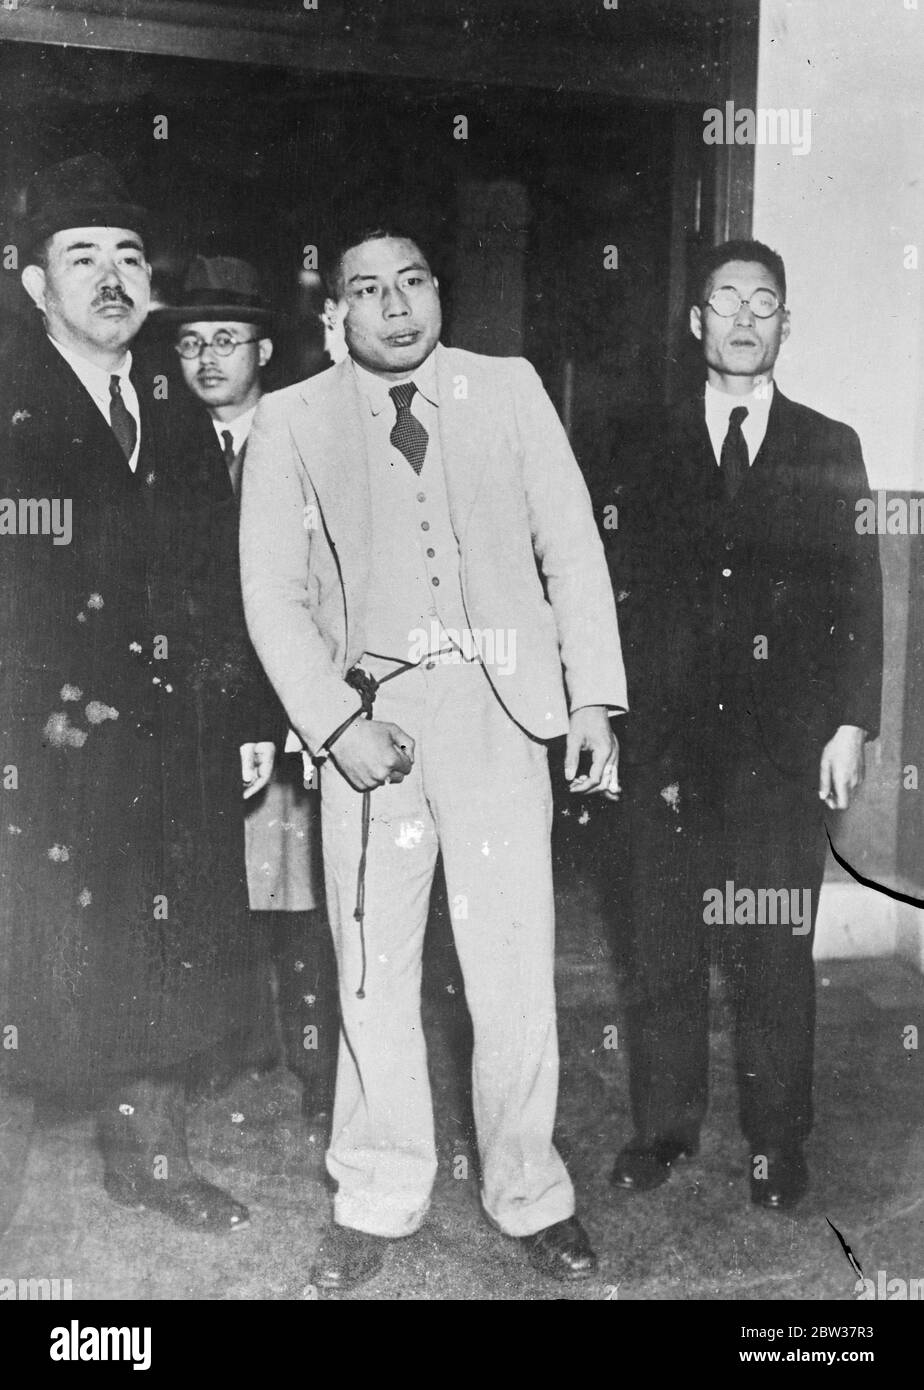 Japanischer Champion Boxer wegen Attentat auf berühmten Staatsmann verhaftet. Sosumu Noguchi, japanischer Weltmeister im Boxing, wurde nach dem Versuch verhaftet, Baron Reijiro Wakatsumi, einen prominenten japanischen Staatsmann, zu ermorden, als der Baron am Bahnhof Uyeno in Tokio ankam. Er entkam knapp dem Tod an der Stelle eines Dolches. Foto zeigt: Susumu Noguchi nach seiner Verhaftung. 22 Dezember 1933 Stockfoto